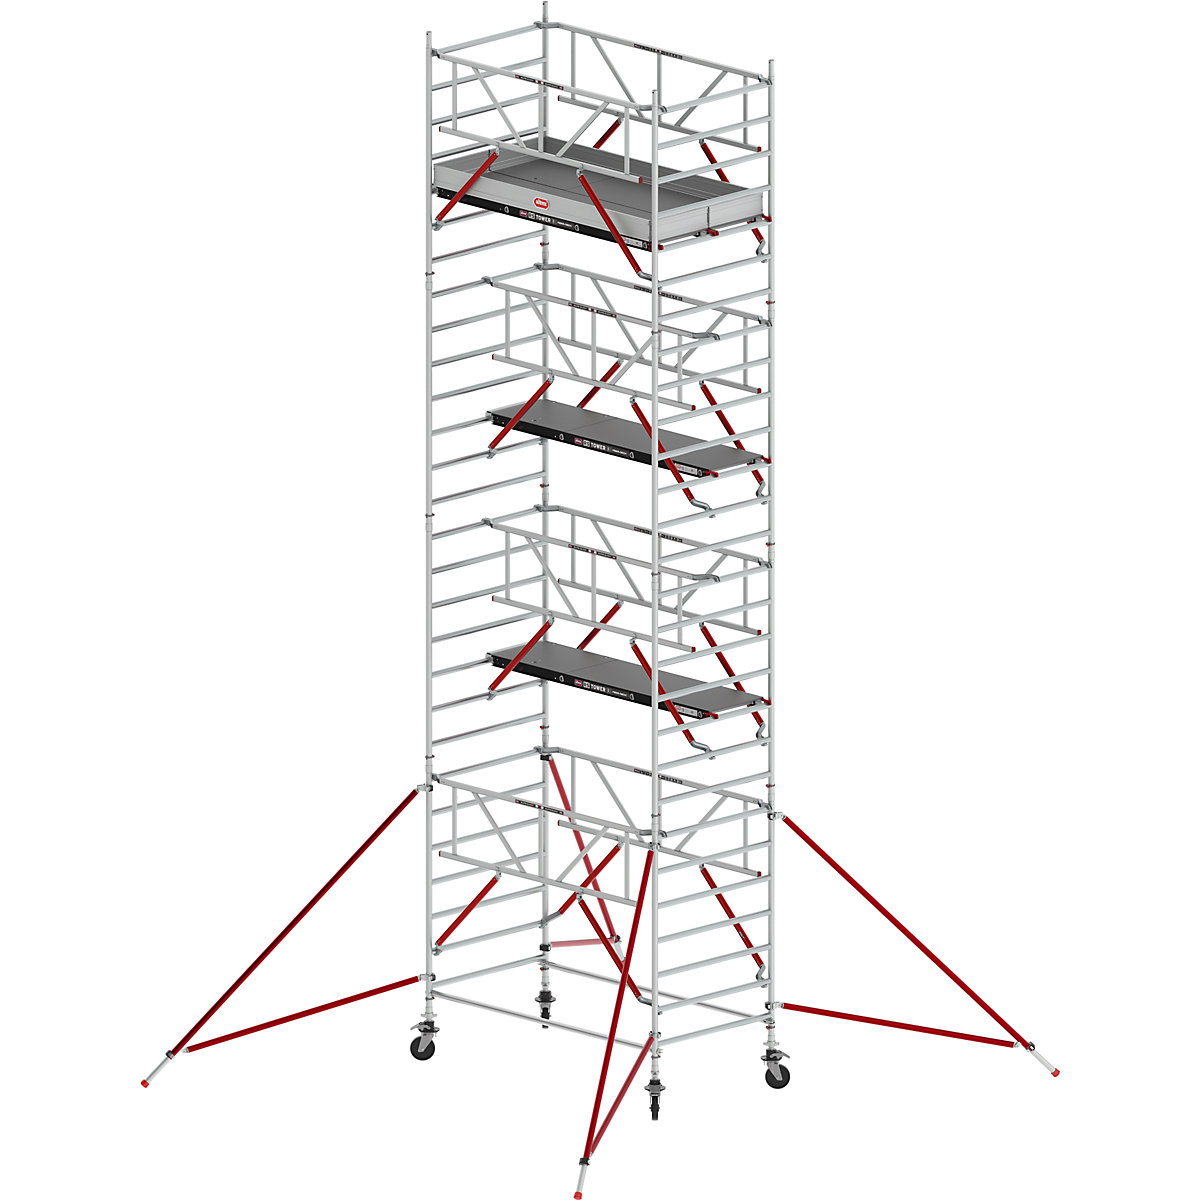 Fahrgerüst RS TOWER 52 breit Altrex, mit Fiber-Deck®-Plattform, Länge 2,45 m, Arbeitshöhe 9,20 m